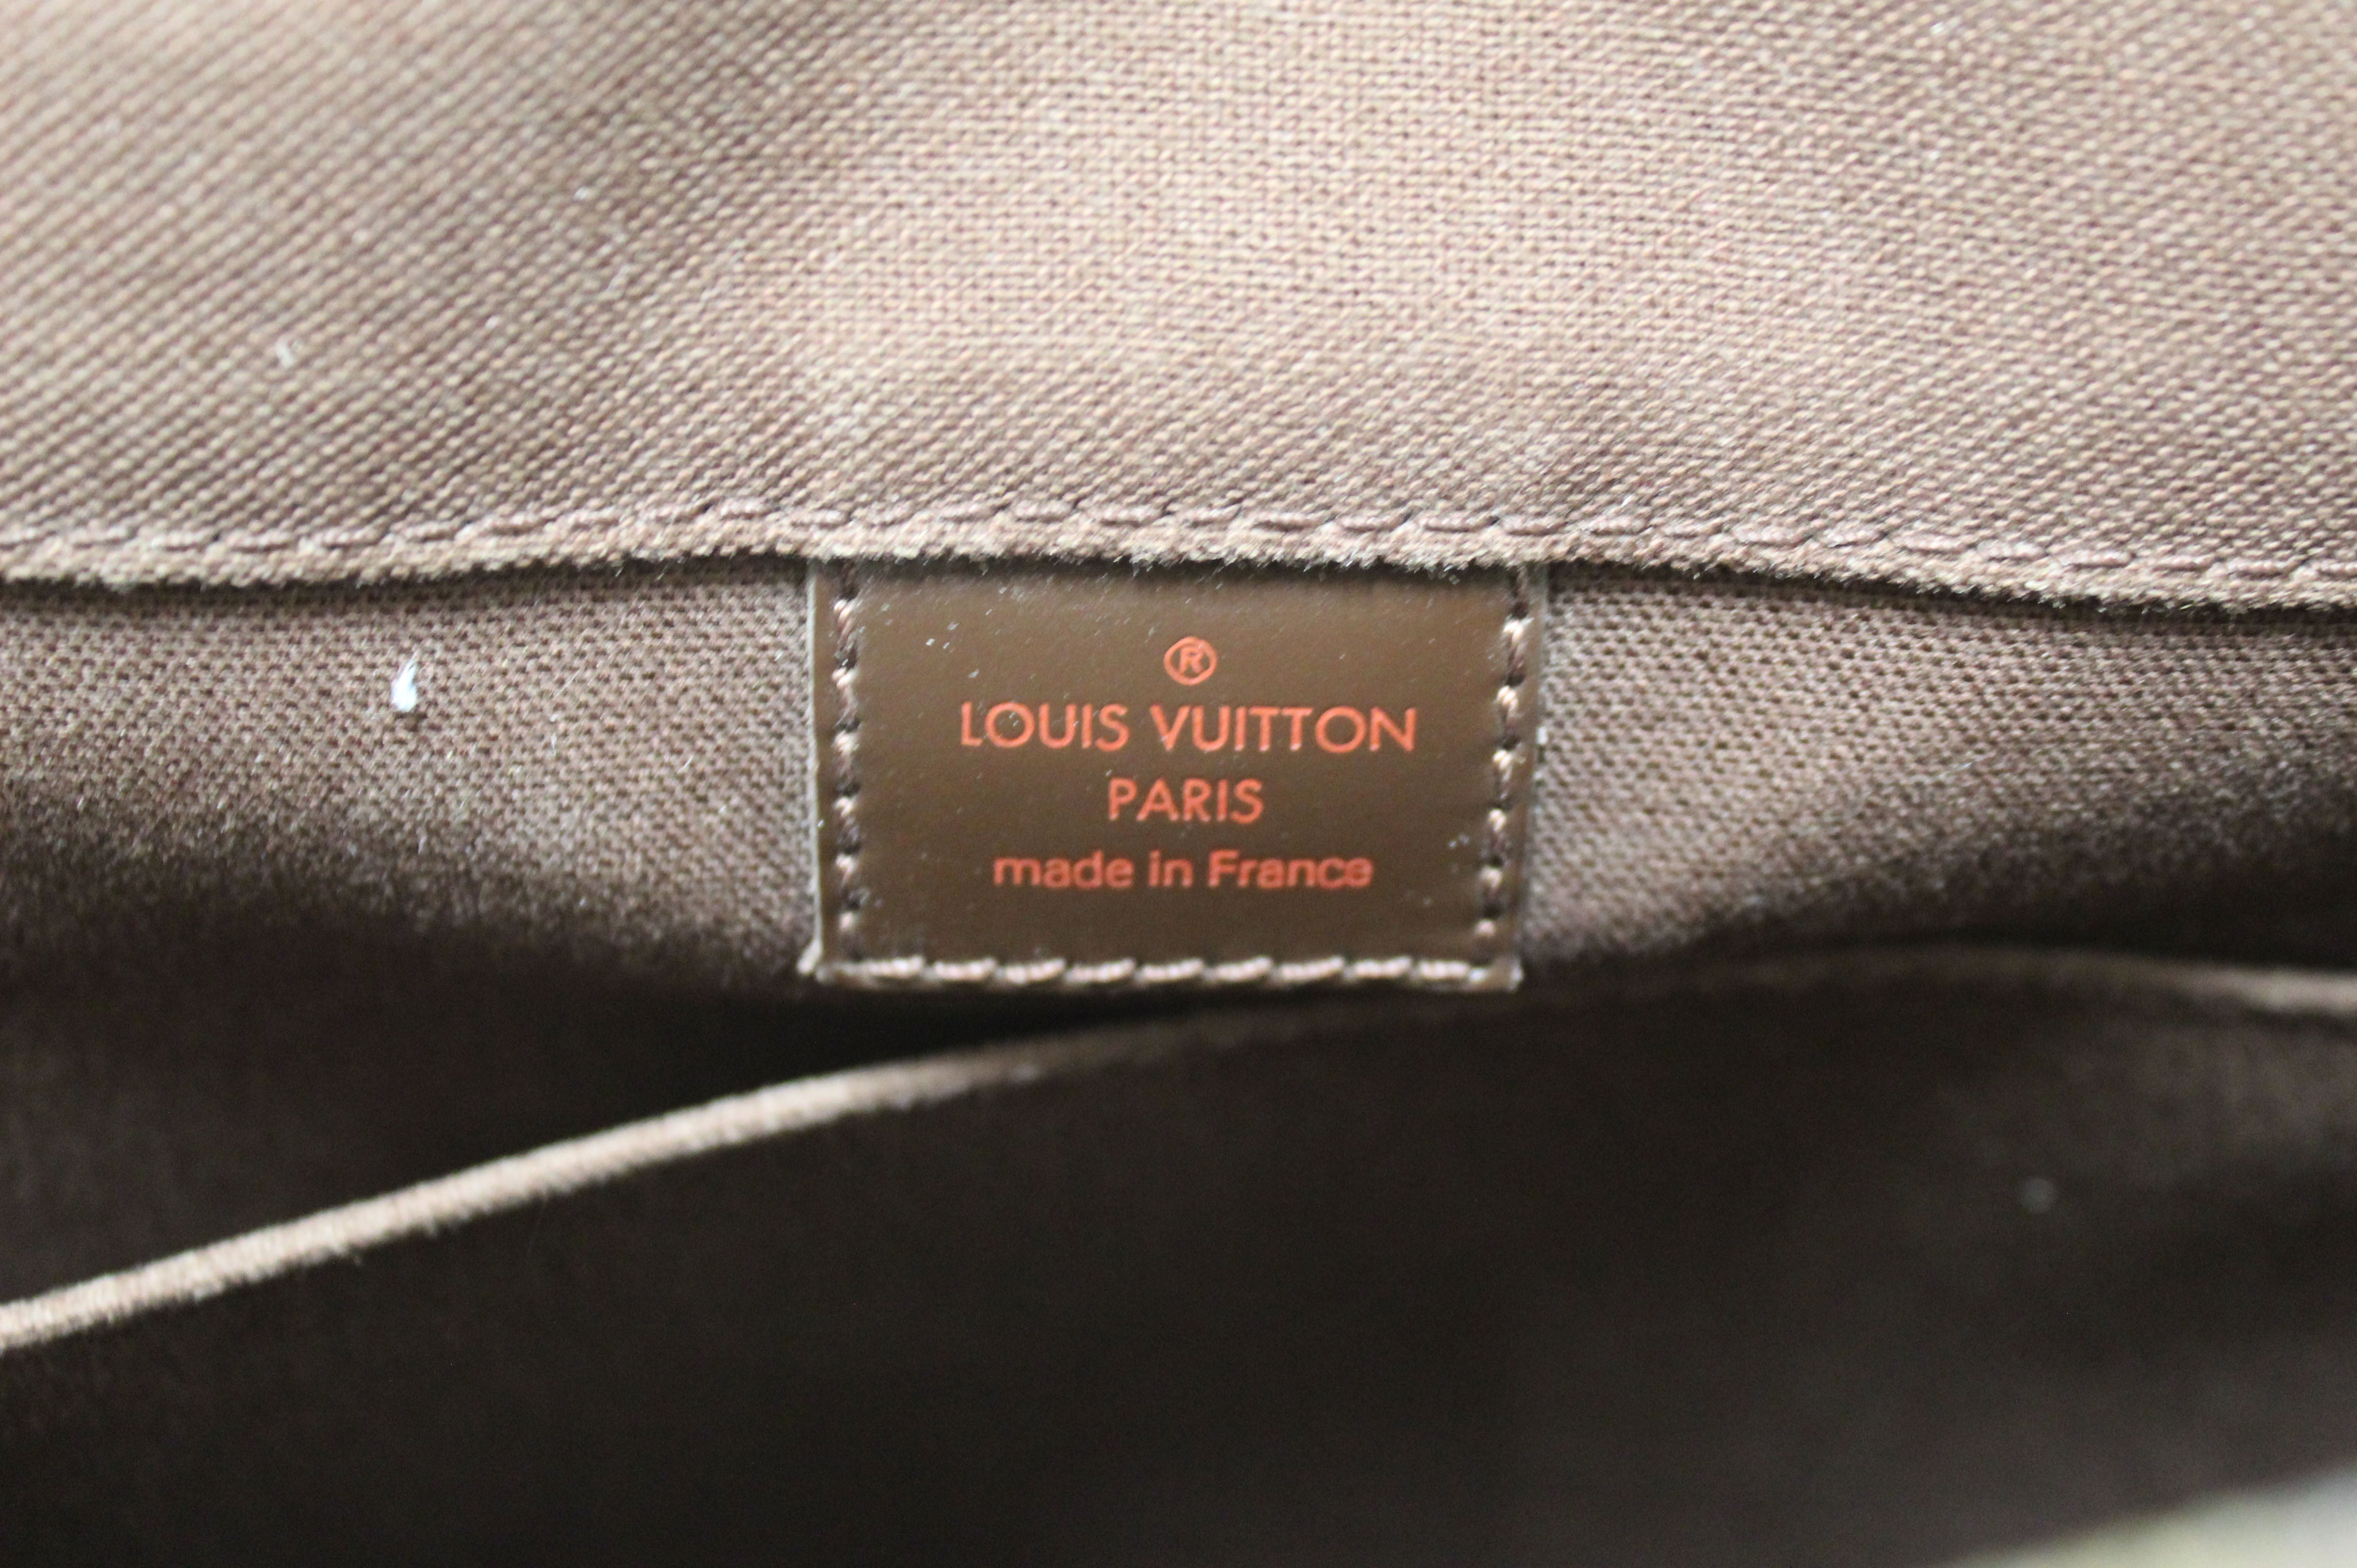 Authentic Louis Vuitton Damier Ebene Bastille Messenger Bag